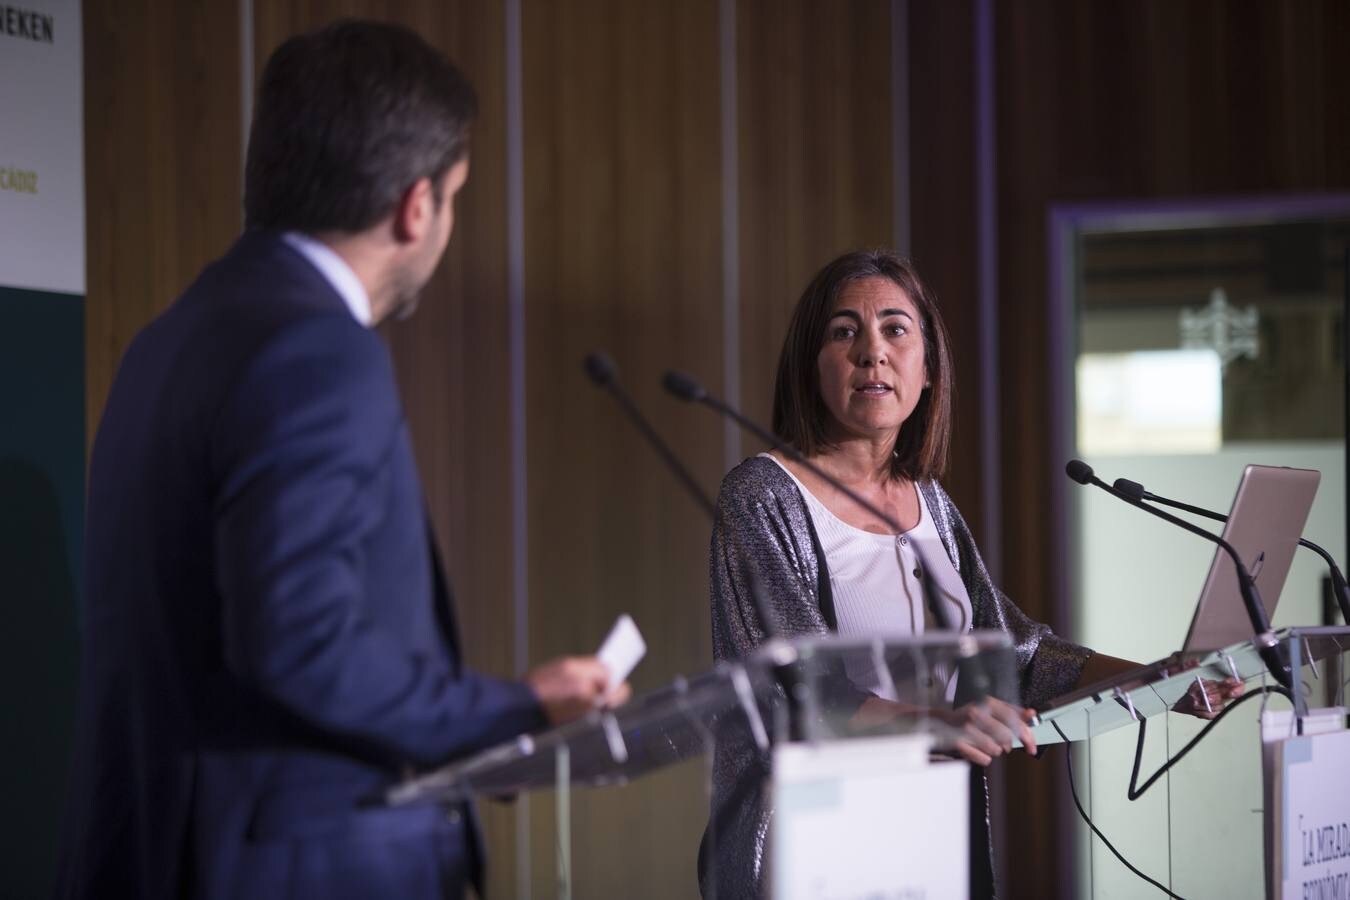 María Jesús Almazor, consejera delegada de Telefónica, en &#039;La Mirada Económica&#039; de ABC y La Voz de Cádiz